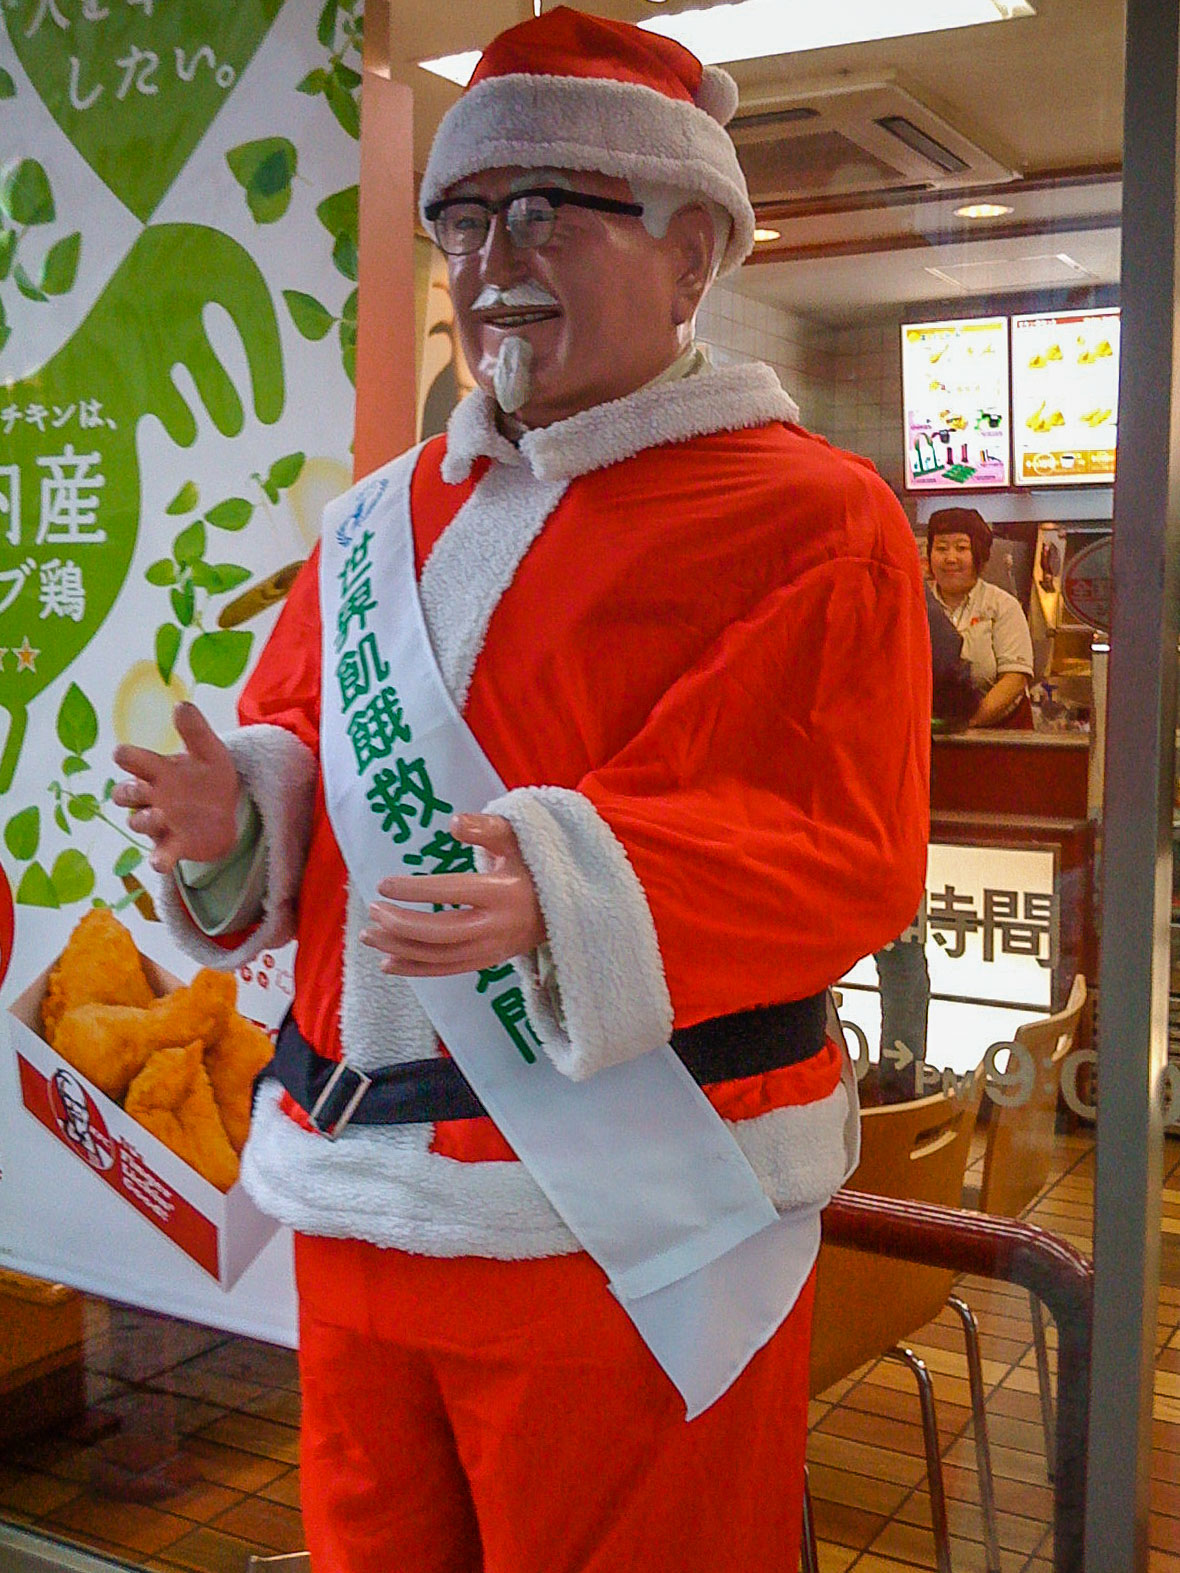 Nein, nicht Santa Clause. Sondern Colonel Sanders von "Kentucky Fried Chicken". Wenn auch im weihnachtlichen Gewand. (Foto: Robert Sanzalone auf Flickr https://flic.kr/p/5BT8XU CC BY 2.0 https://creativecommons.org/licenses/by/2.0/)